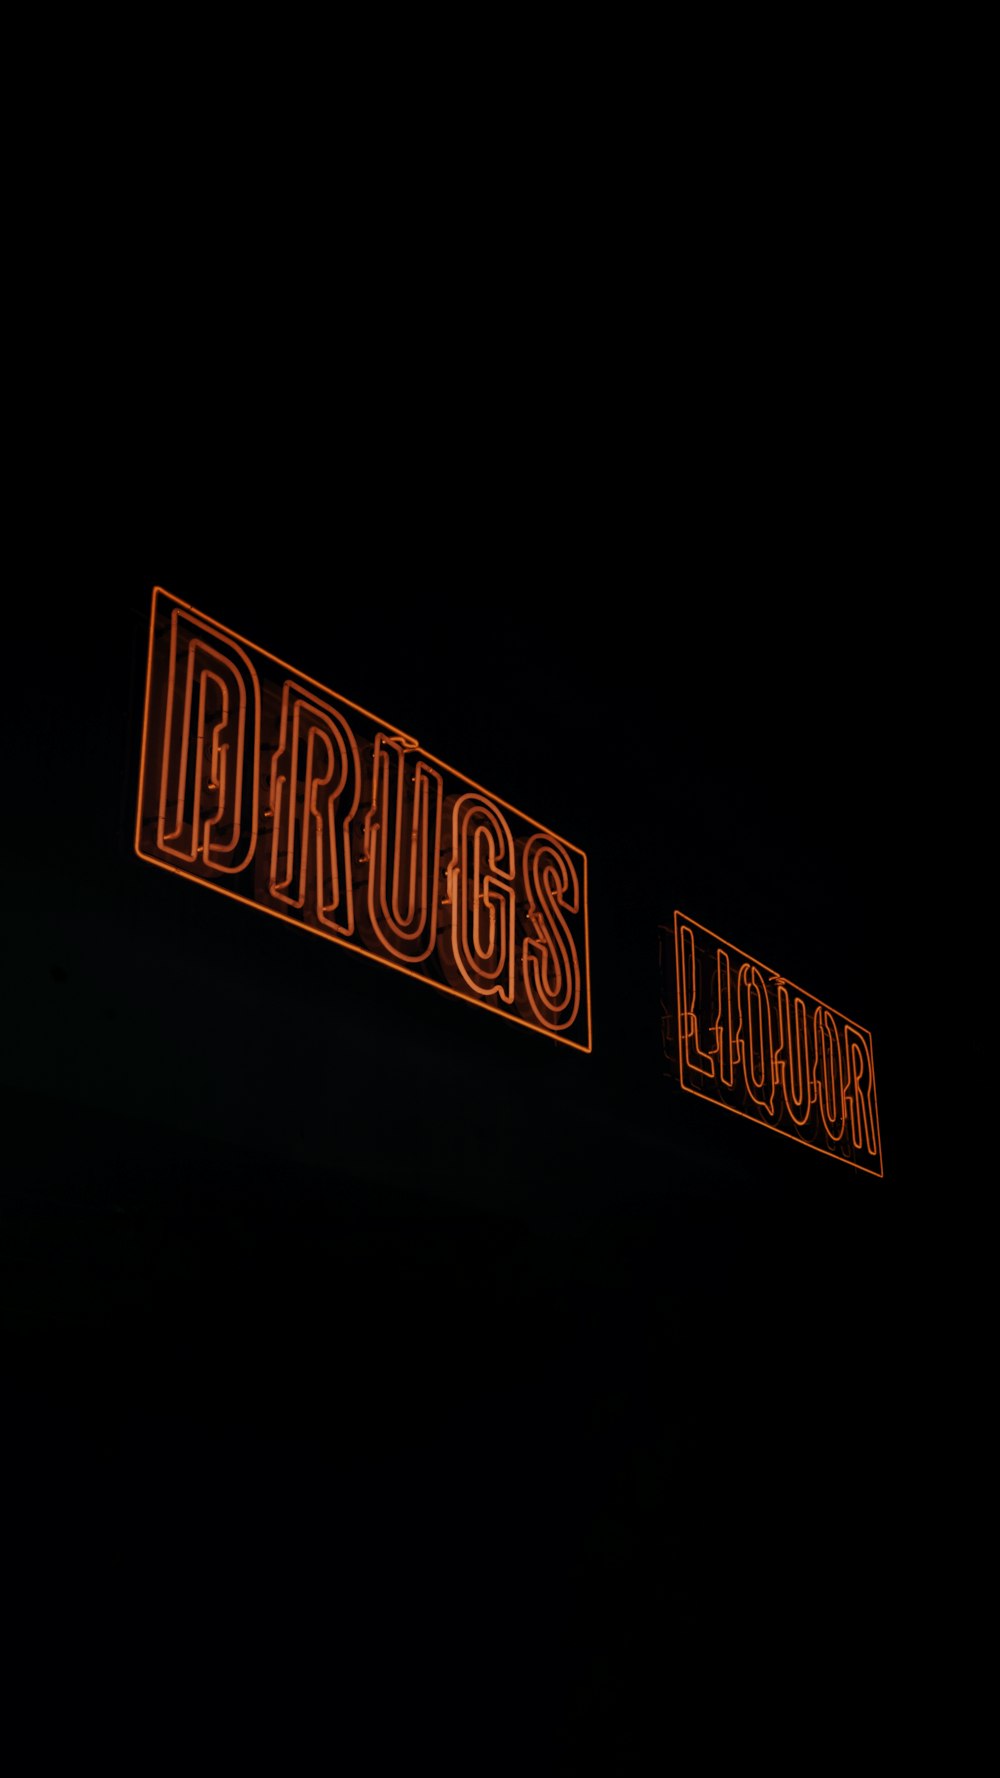 Drugs Liquor LED signage